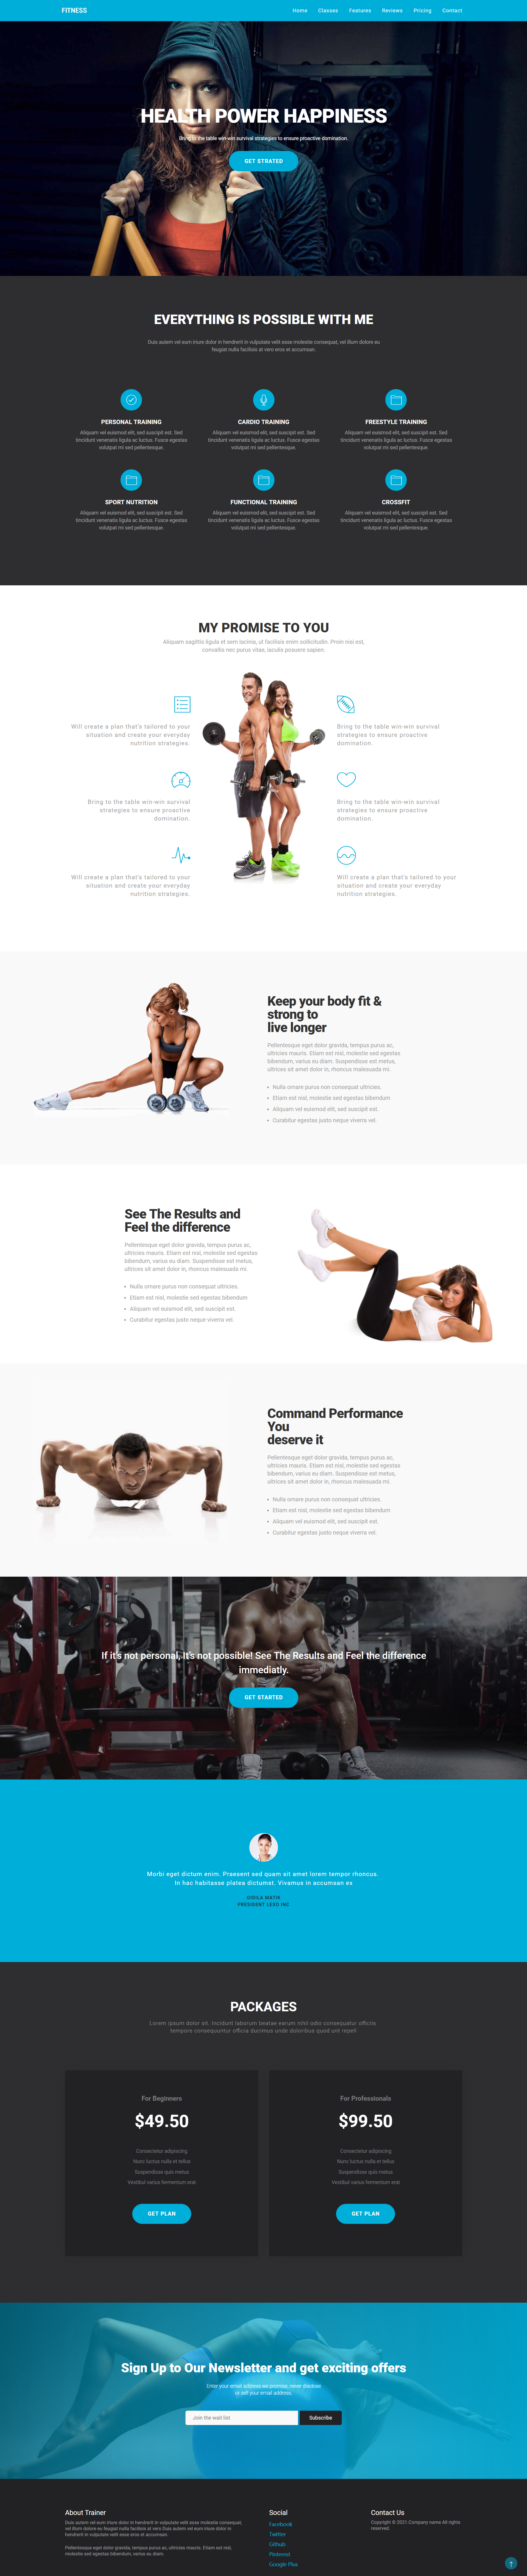 蓝色简洁风格响应式运动健身企业网站模板